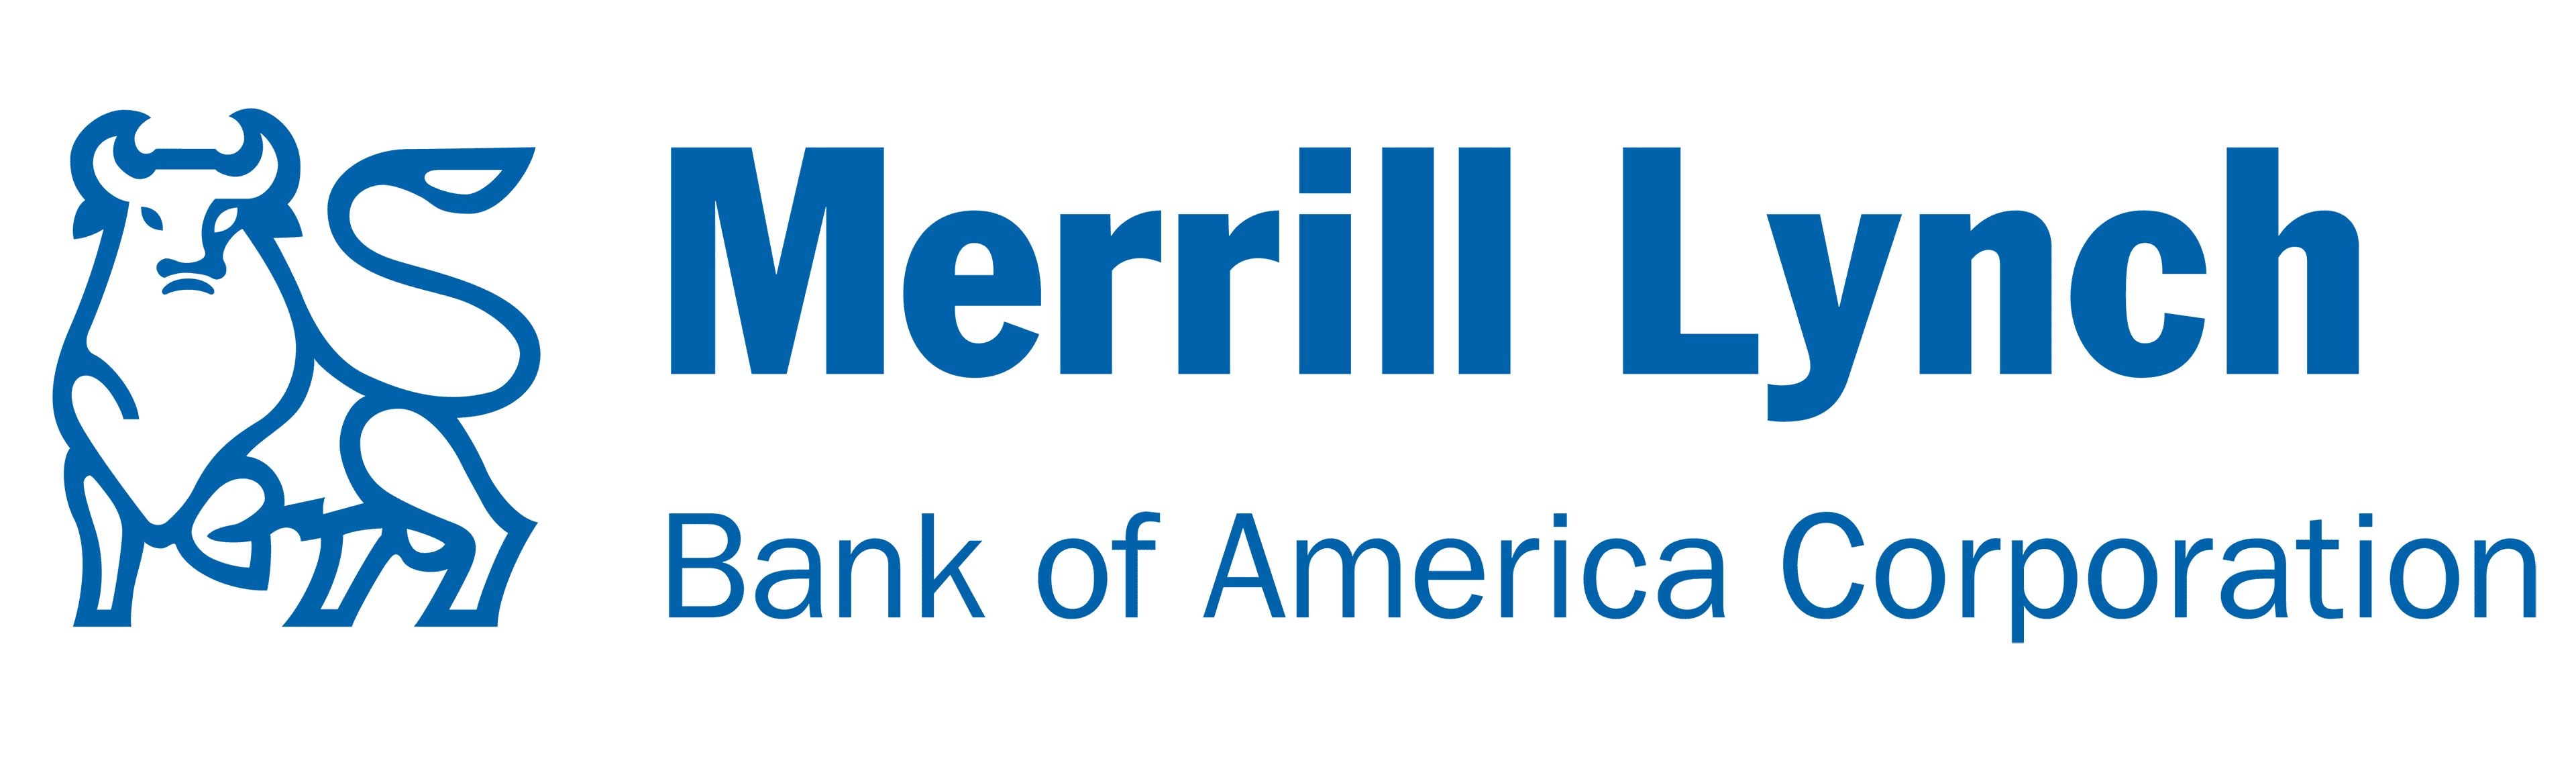 Merrill Lynch company logo.